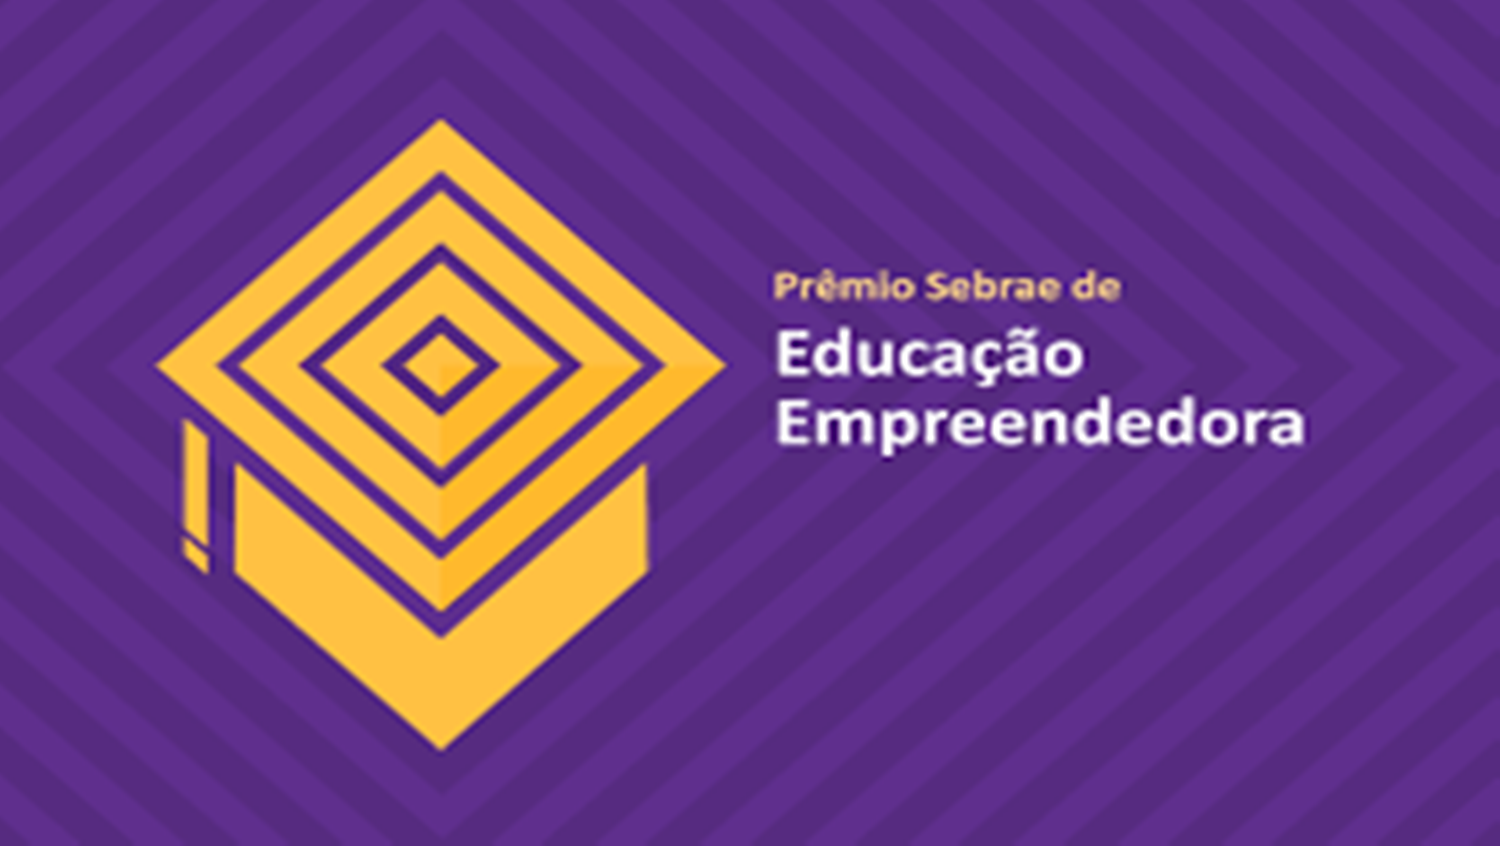 PRÊMIO: Etapa estadual de premiação do Sebrae em educação acontece na próxima semana